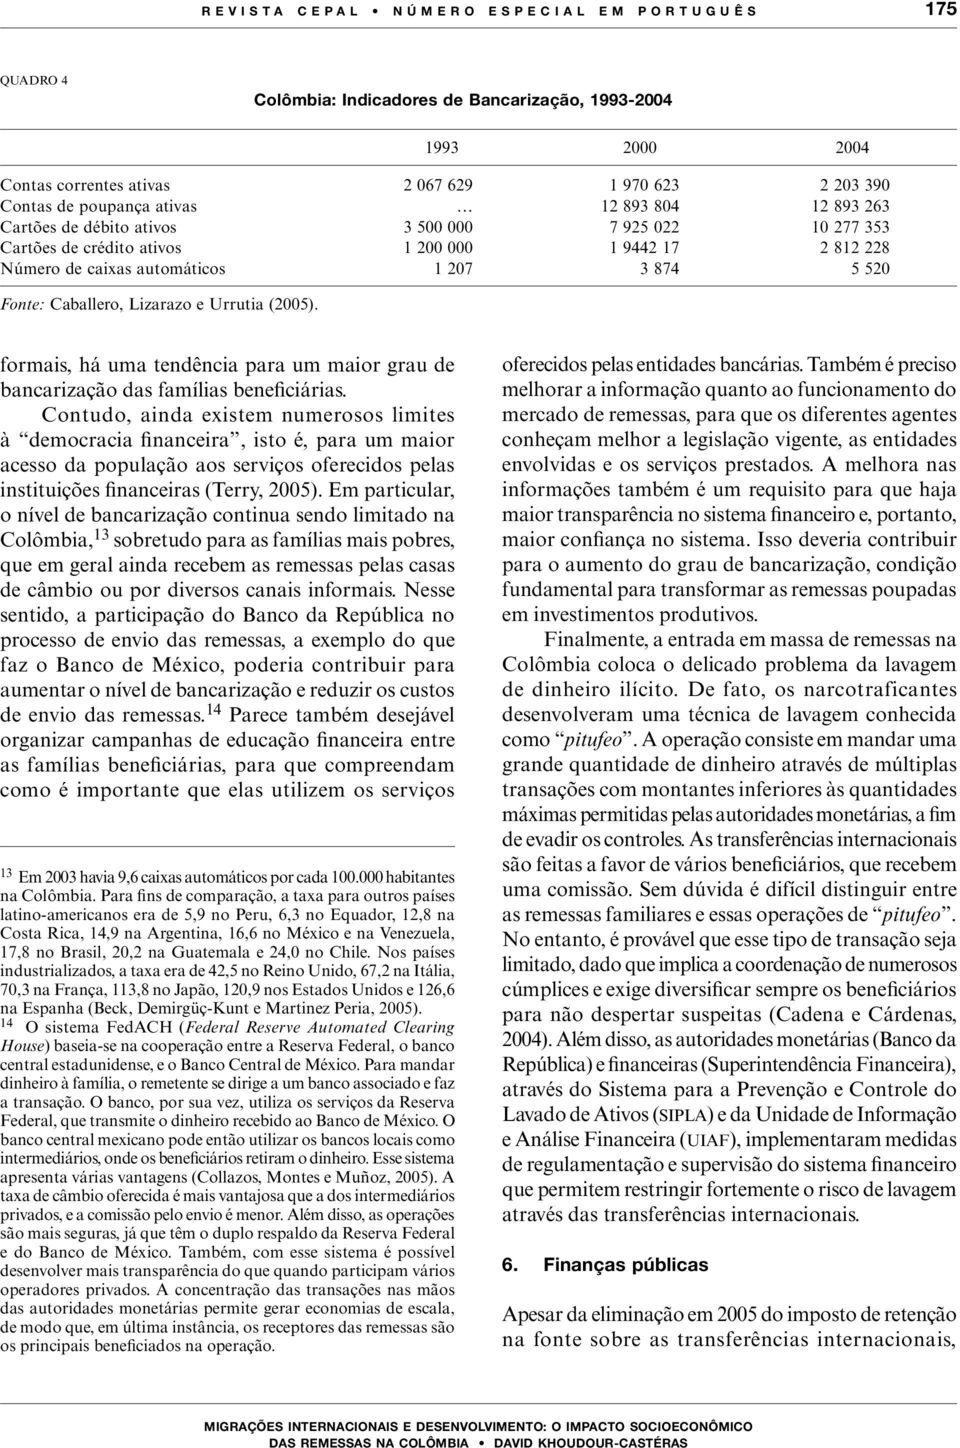 Lizarazo e Urrutia (2005). formais, há uma tendência para um maior grau de bancarização das famílias beneficiárias.